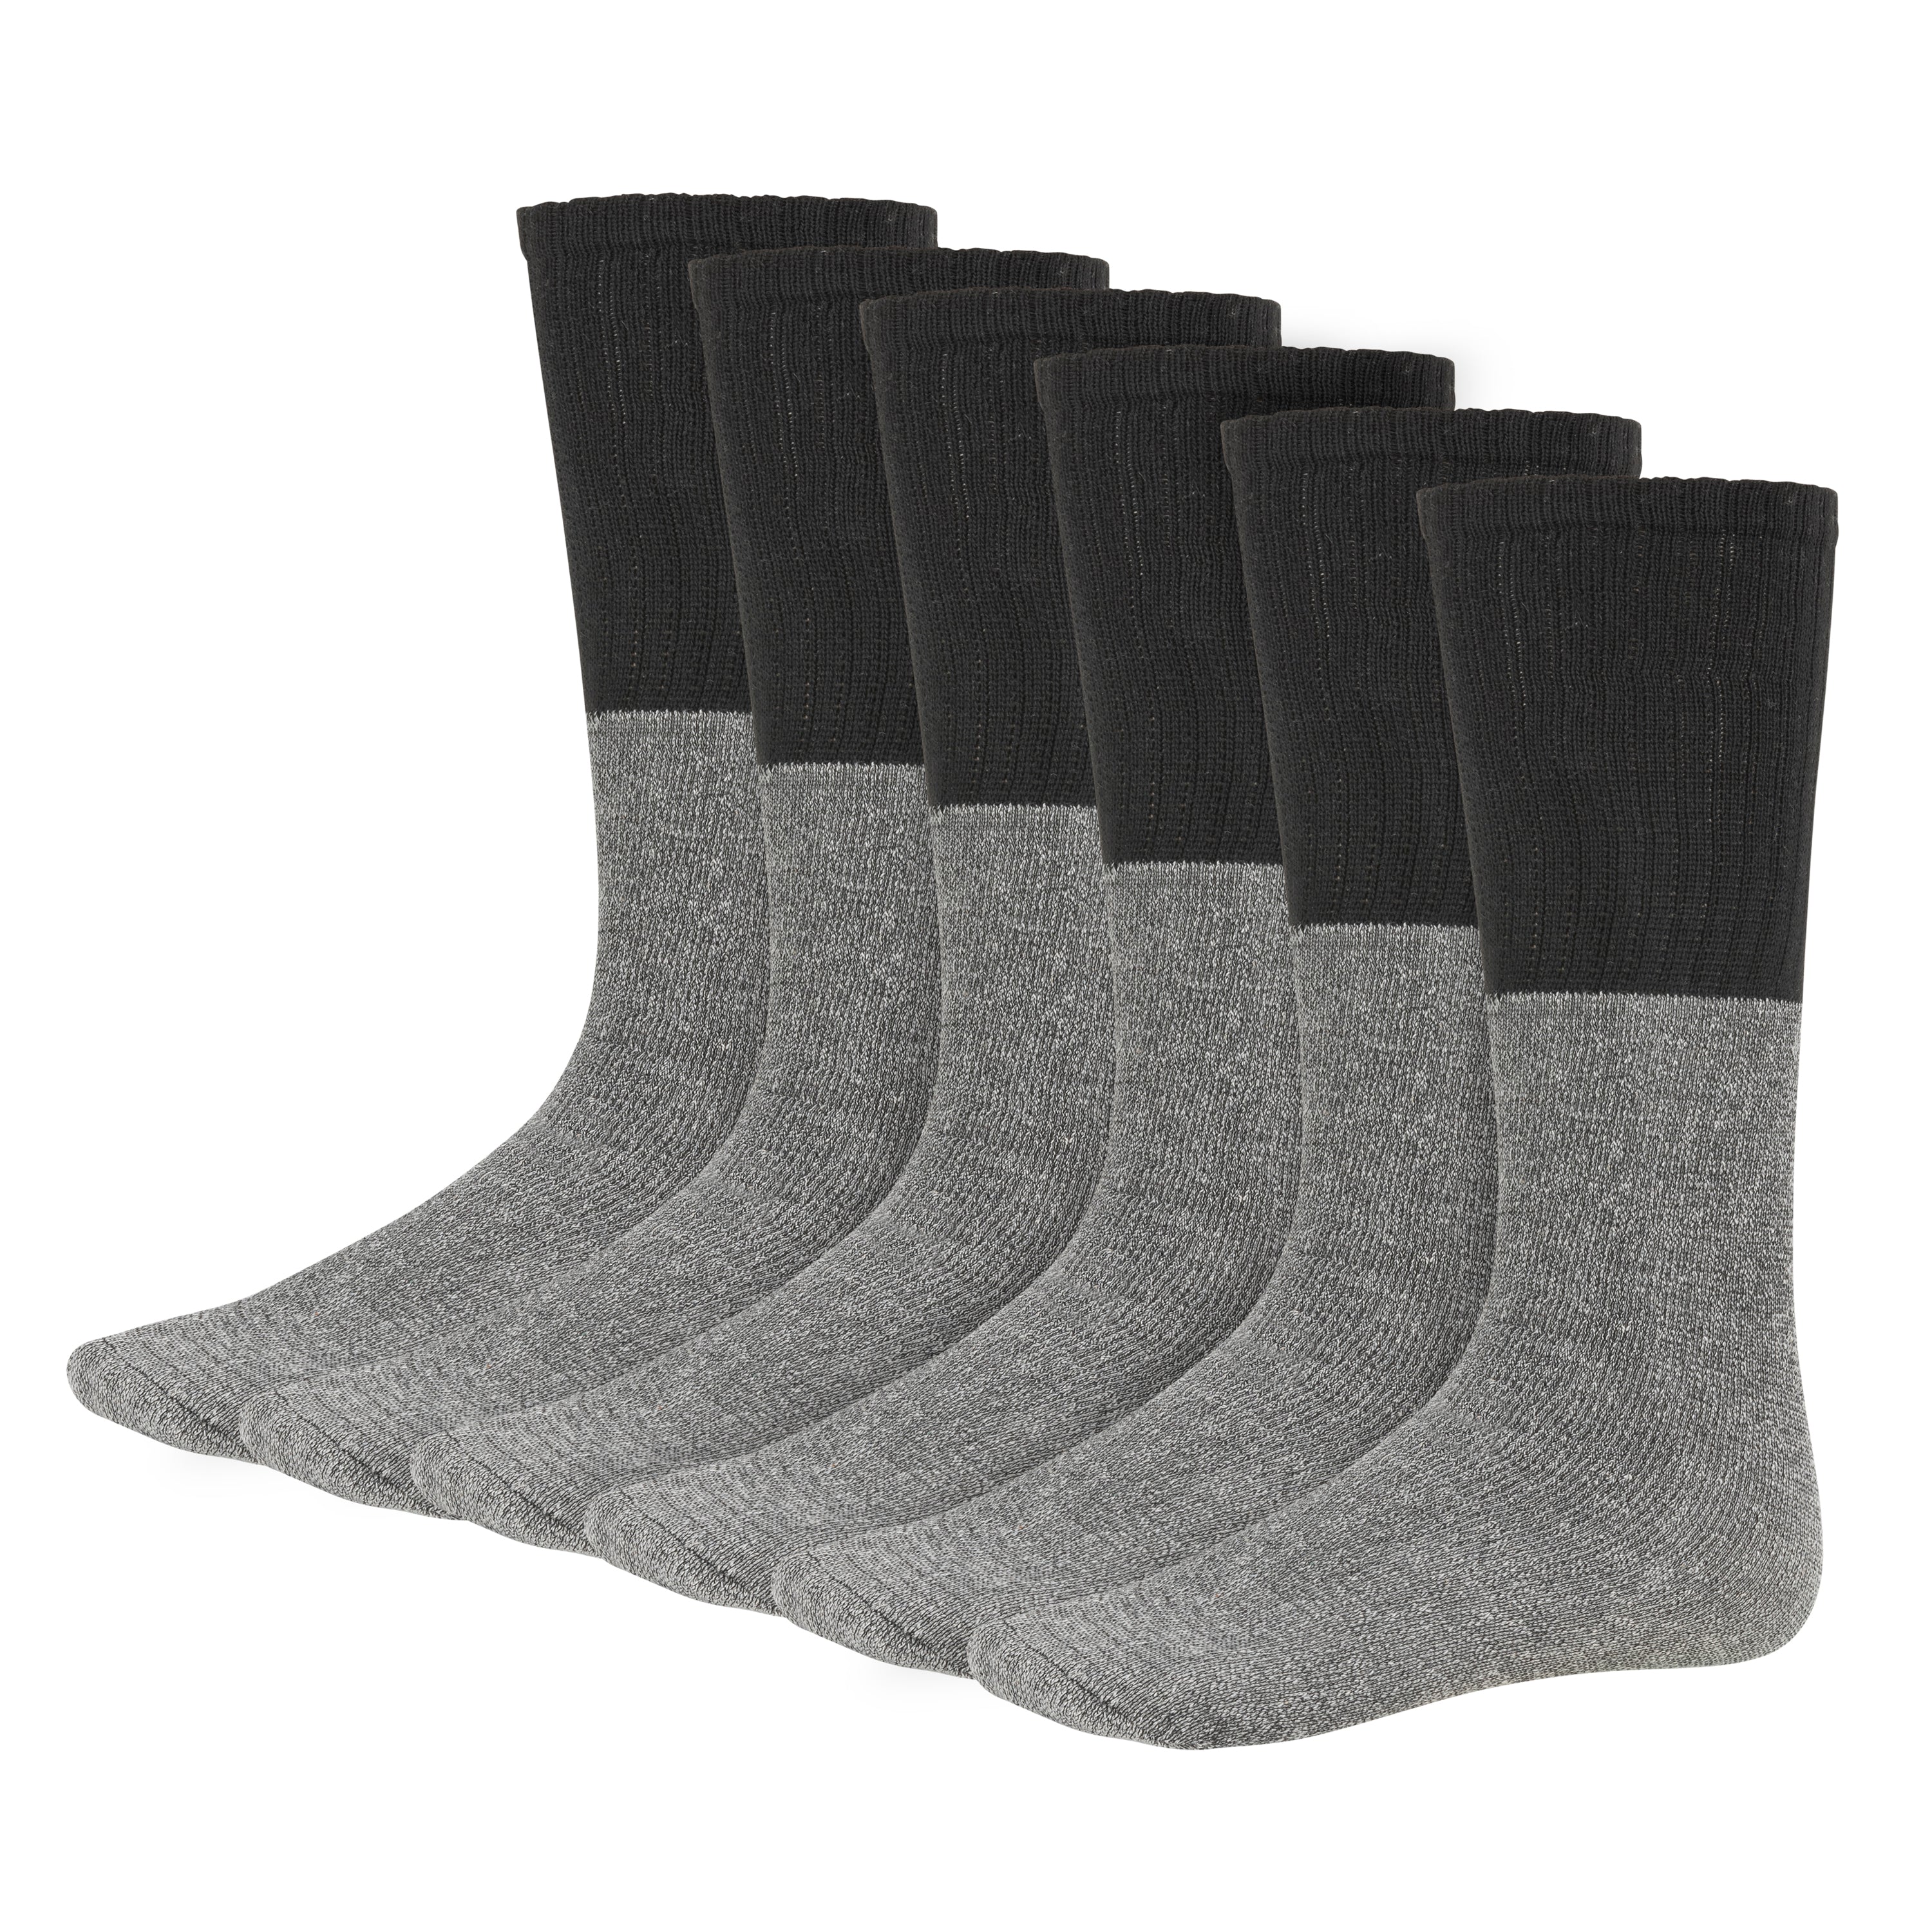 Men's Thermal Boot Socks